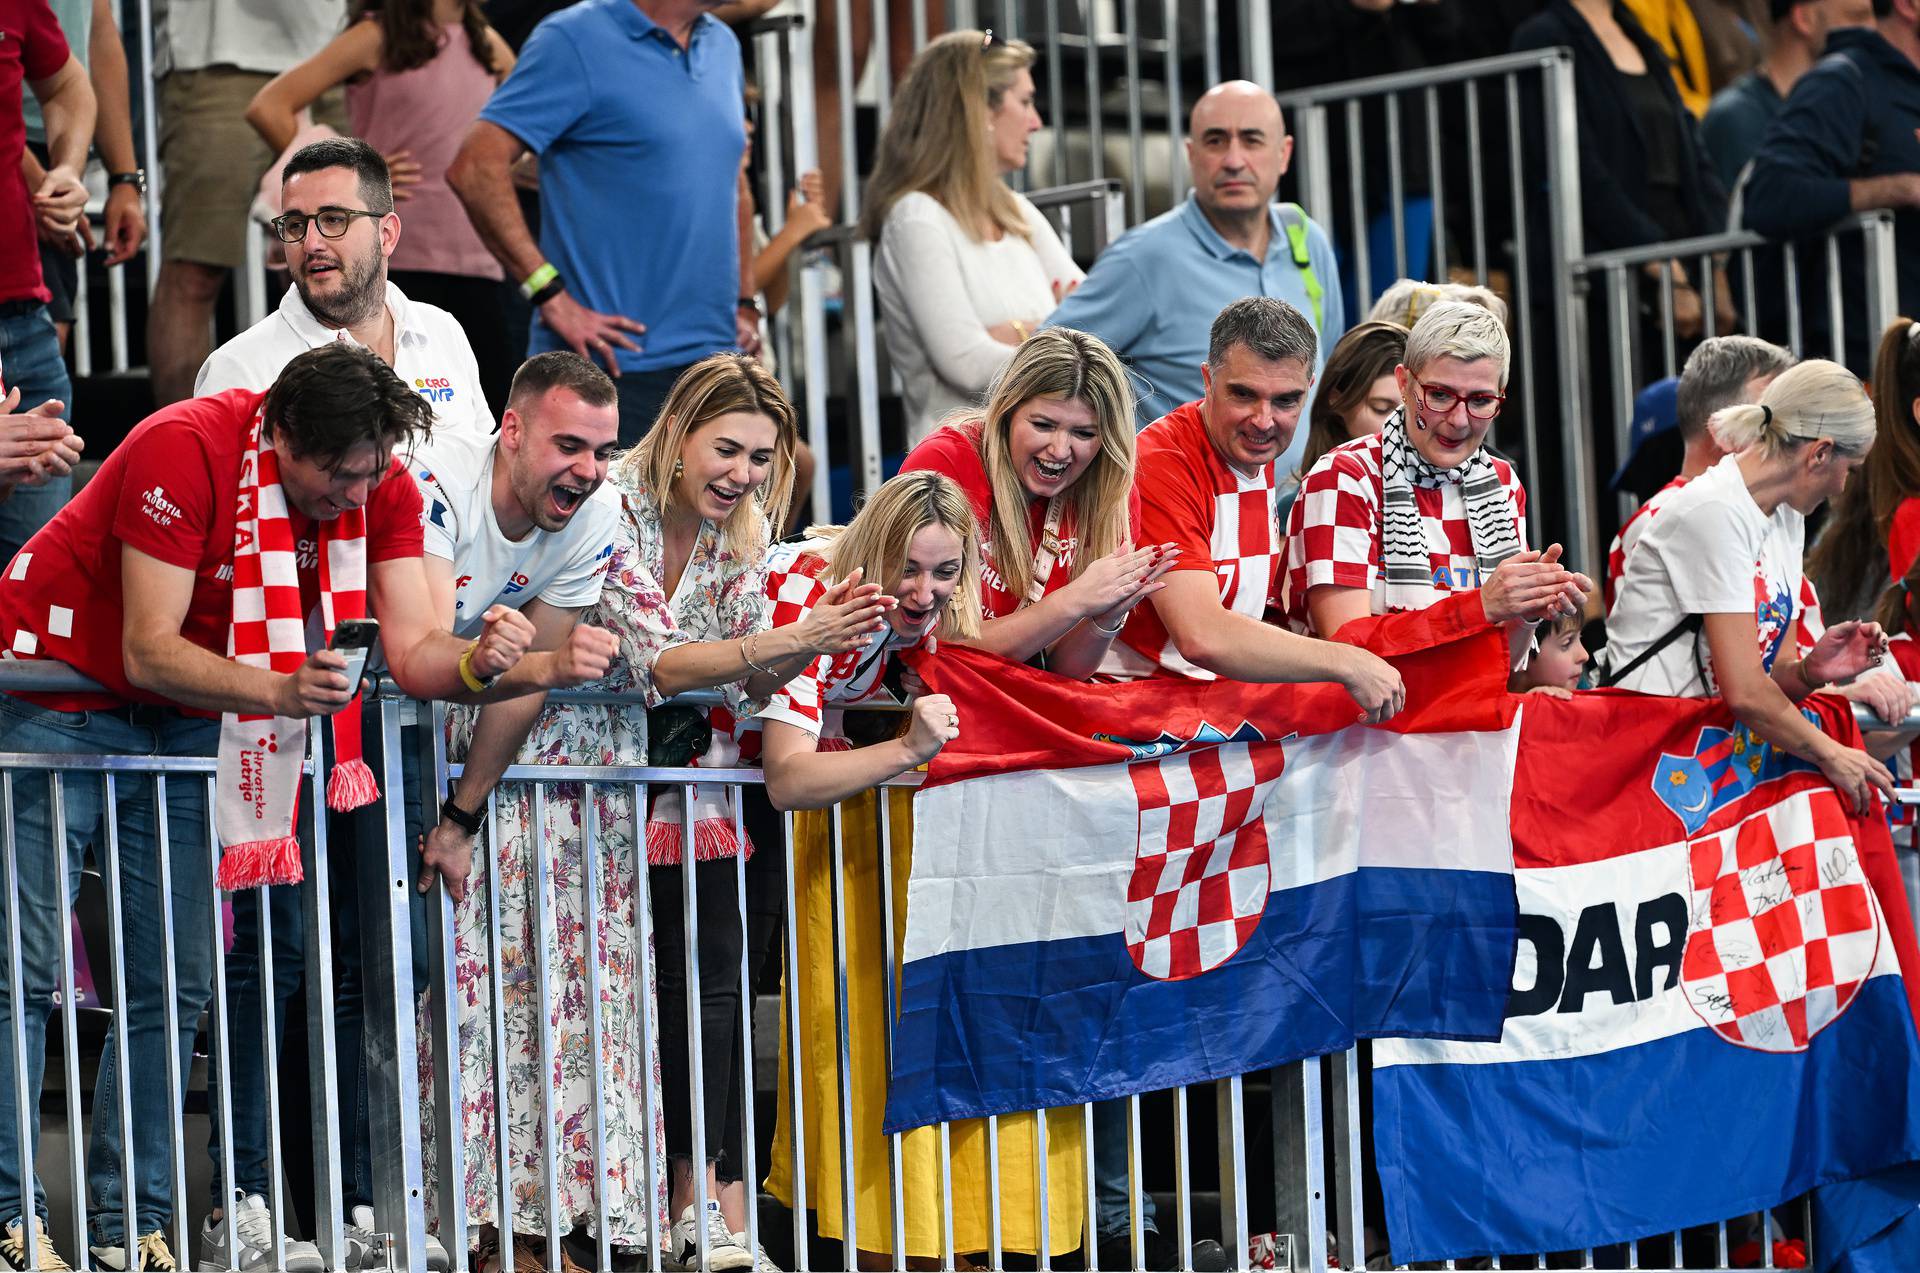 Hrvatska je svjetski prvak u vaterpolu